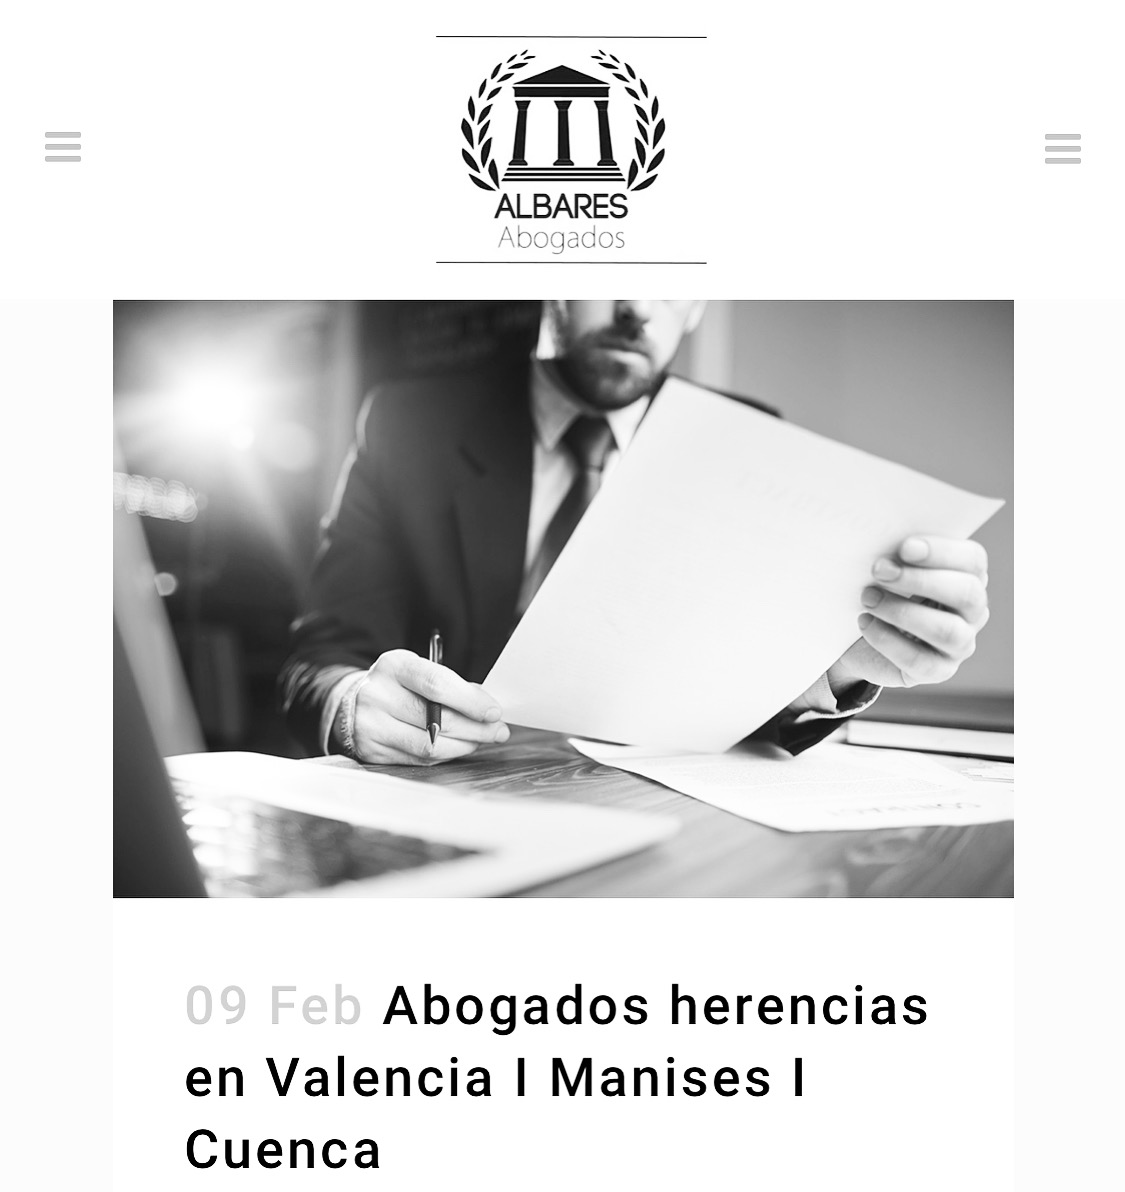 Abogados herencias
en Valencia | Manises |
Cuenca